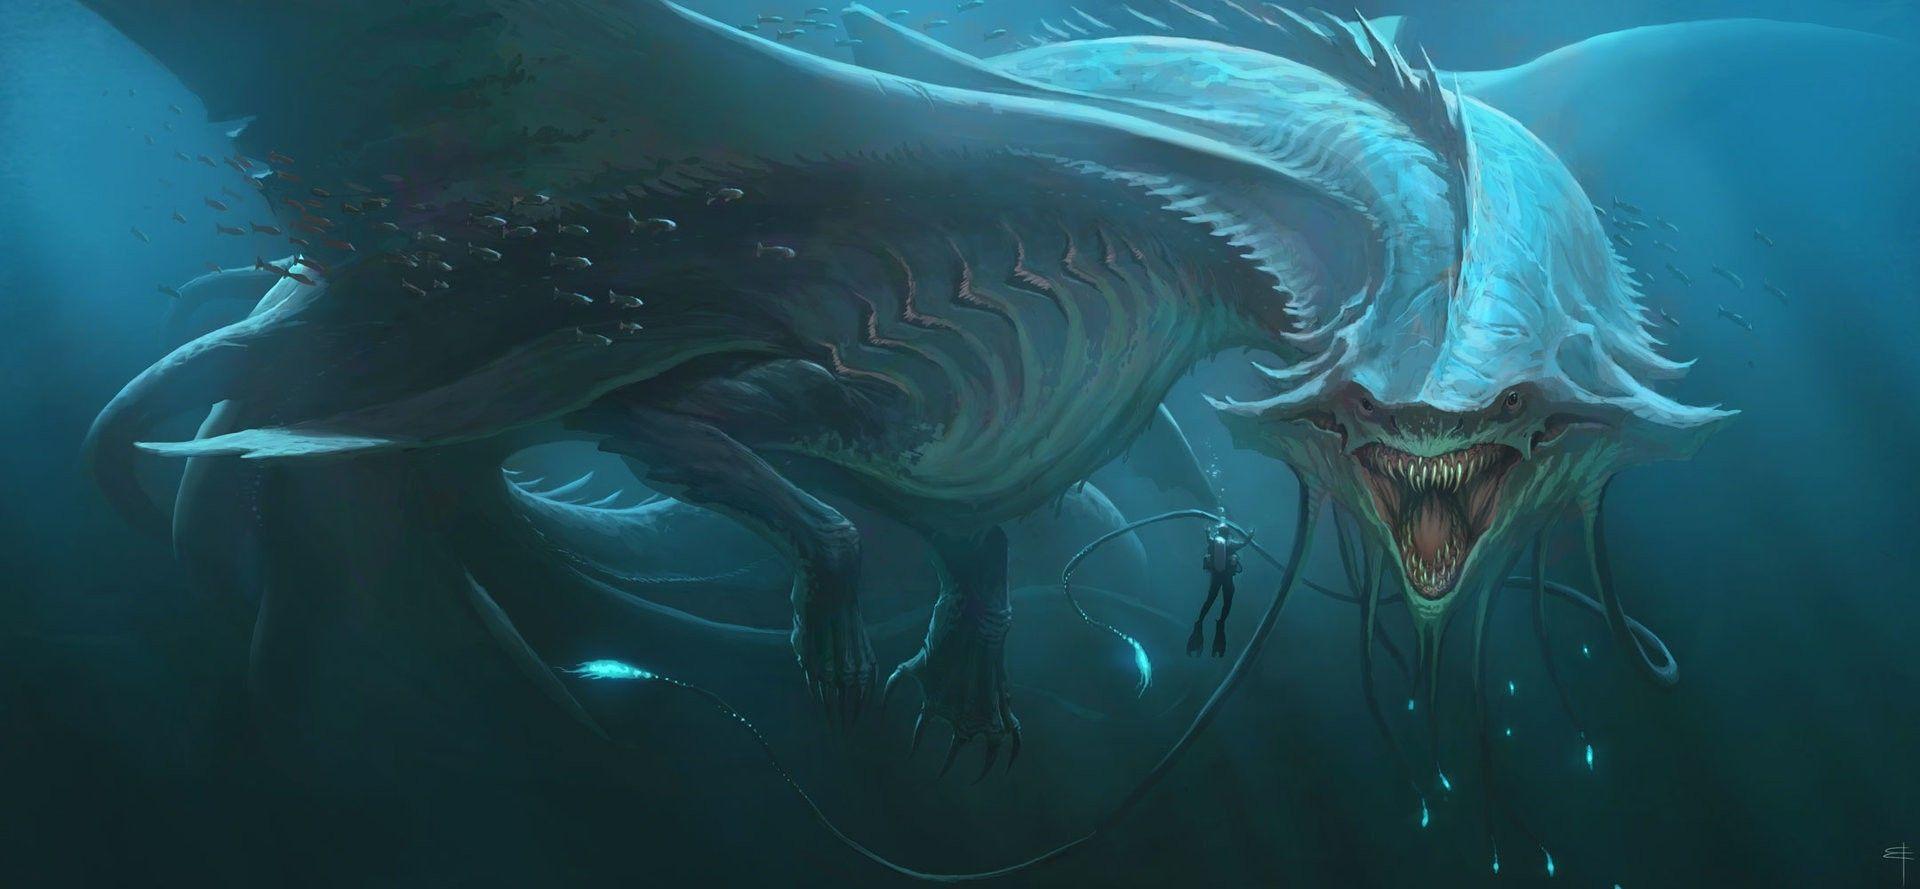 mythical deep sea creatures